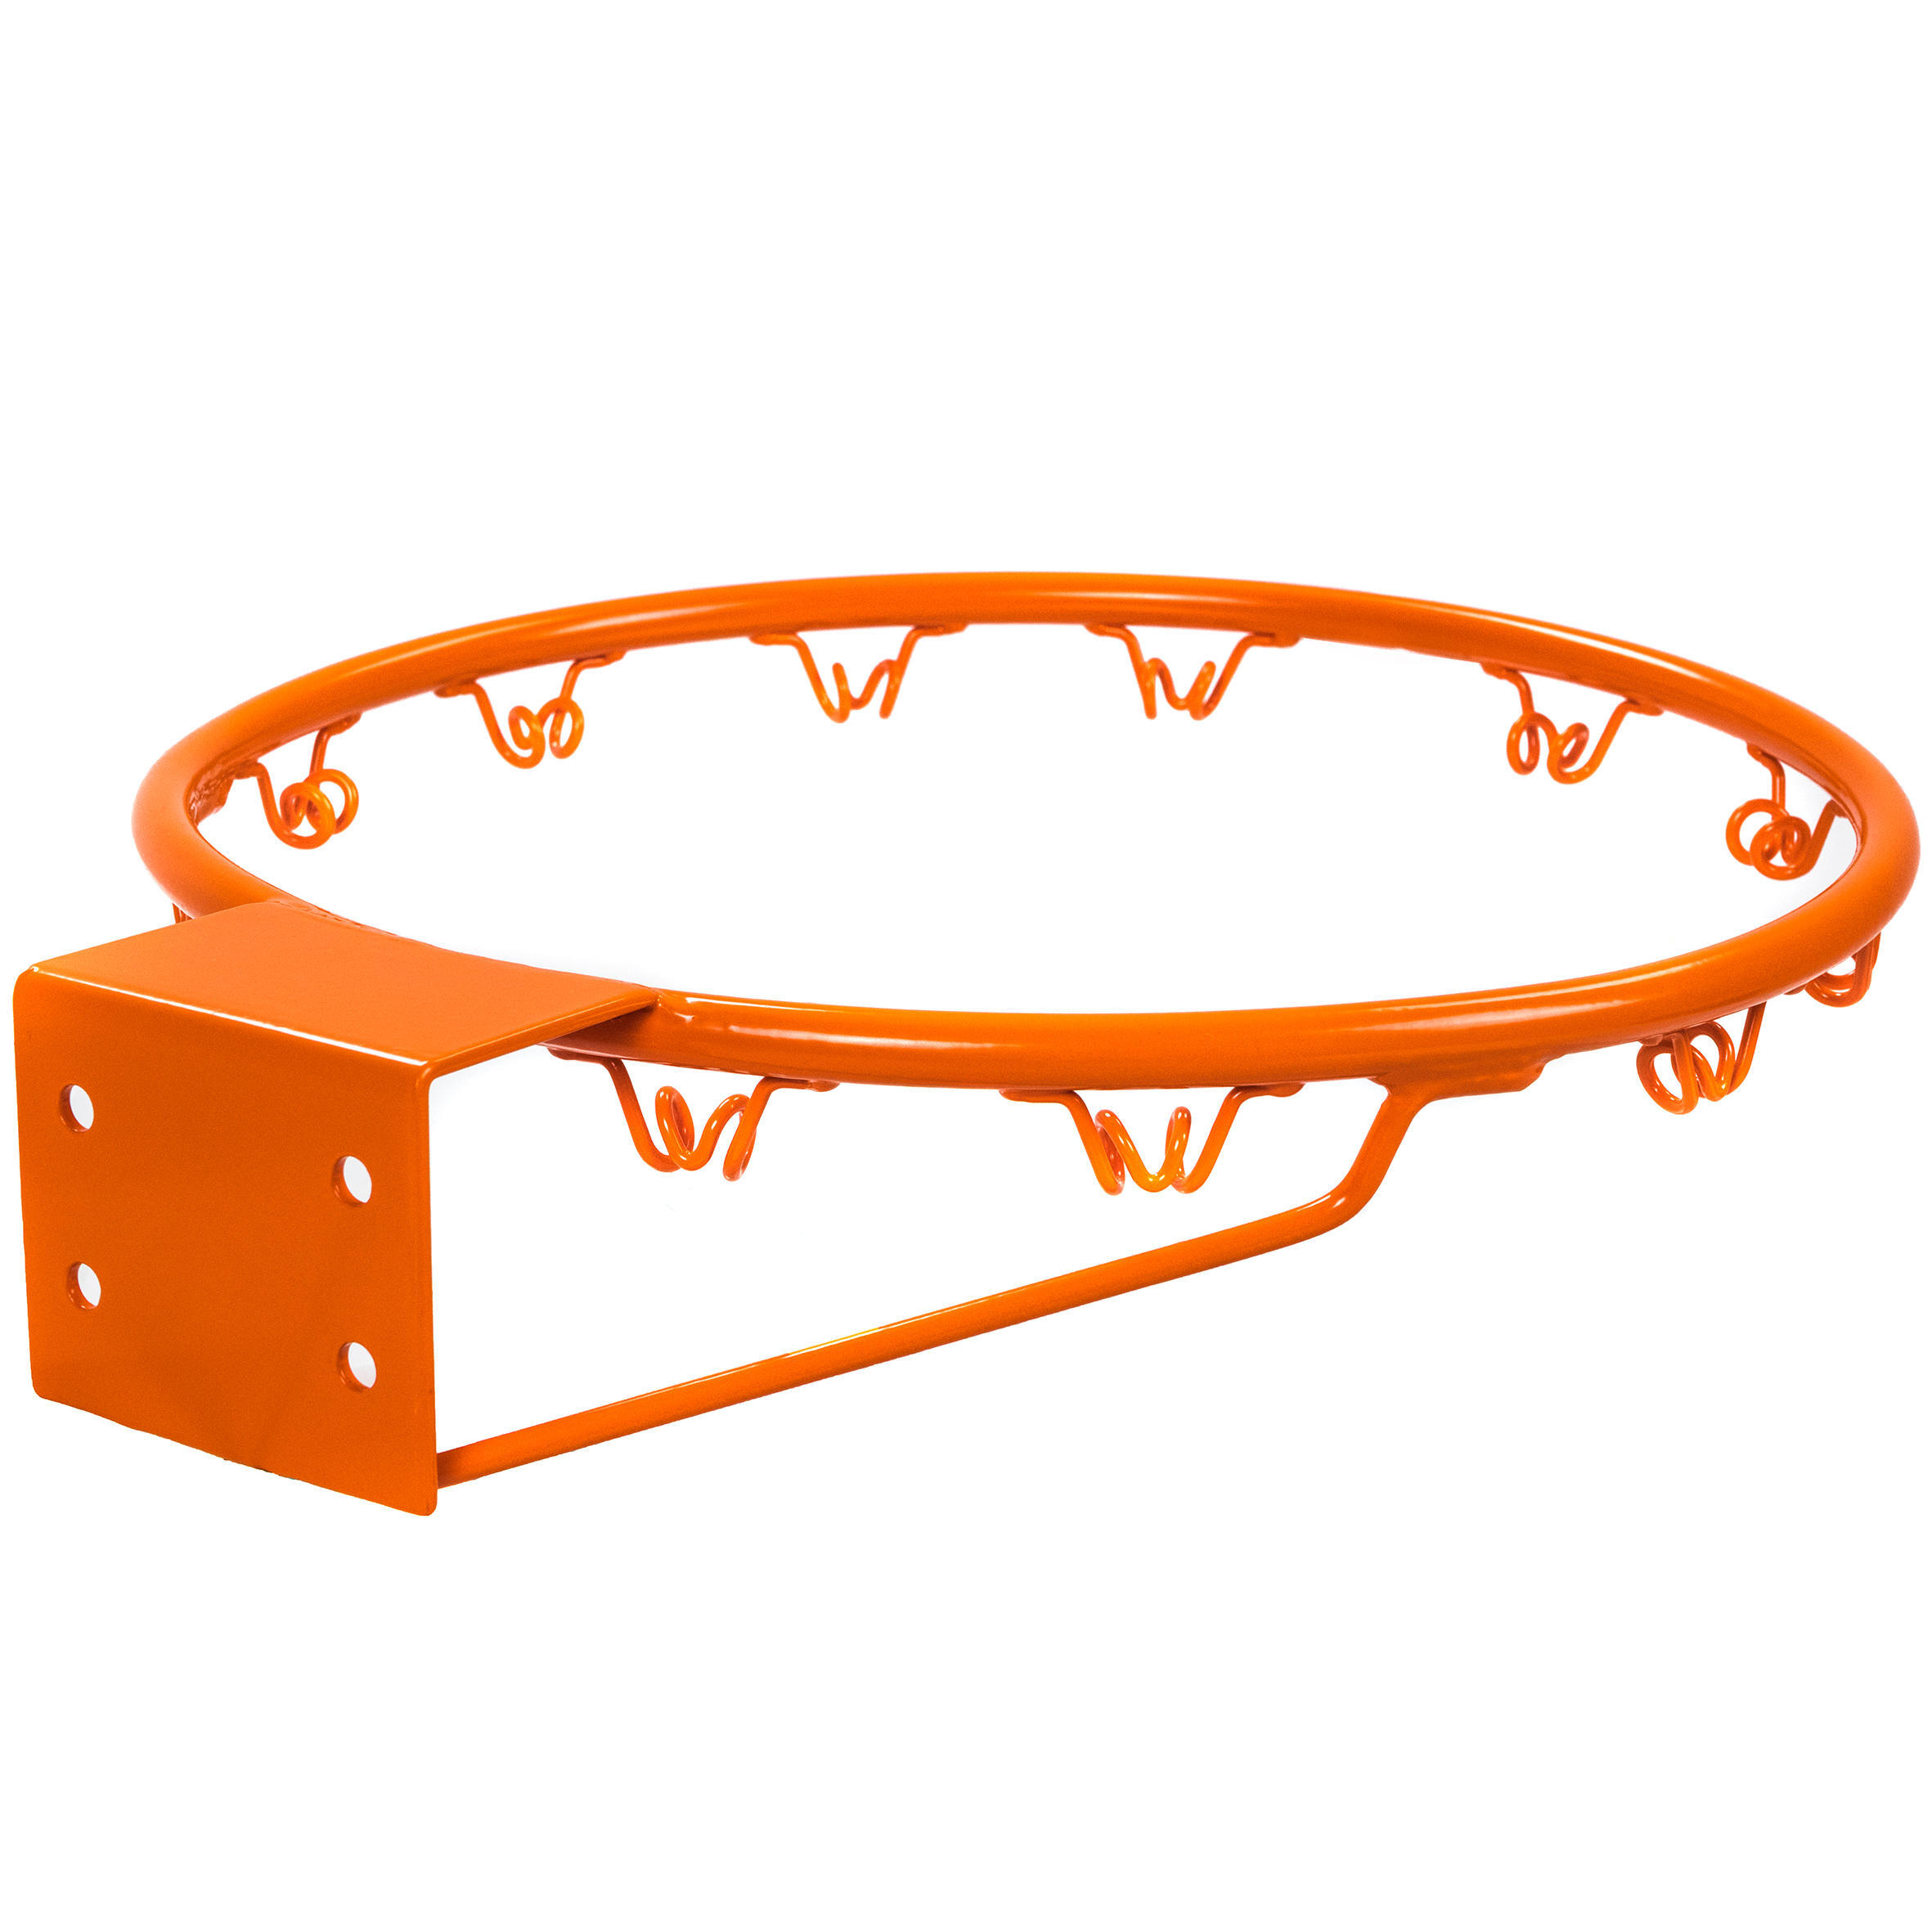 Кольцо для баскетбольной корзины B200 Easy TARMAK сменное кольцо для баскетбольной сетки уличное металлическое кольцо цепочка сменная сетка для бассейна аксессуары для тяжелых видов спо